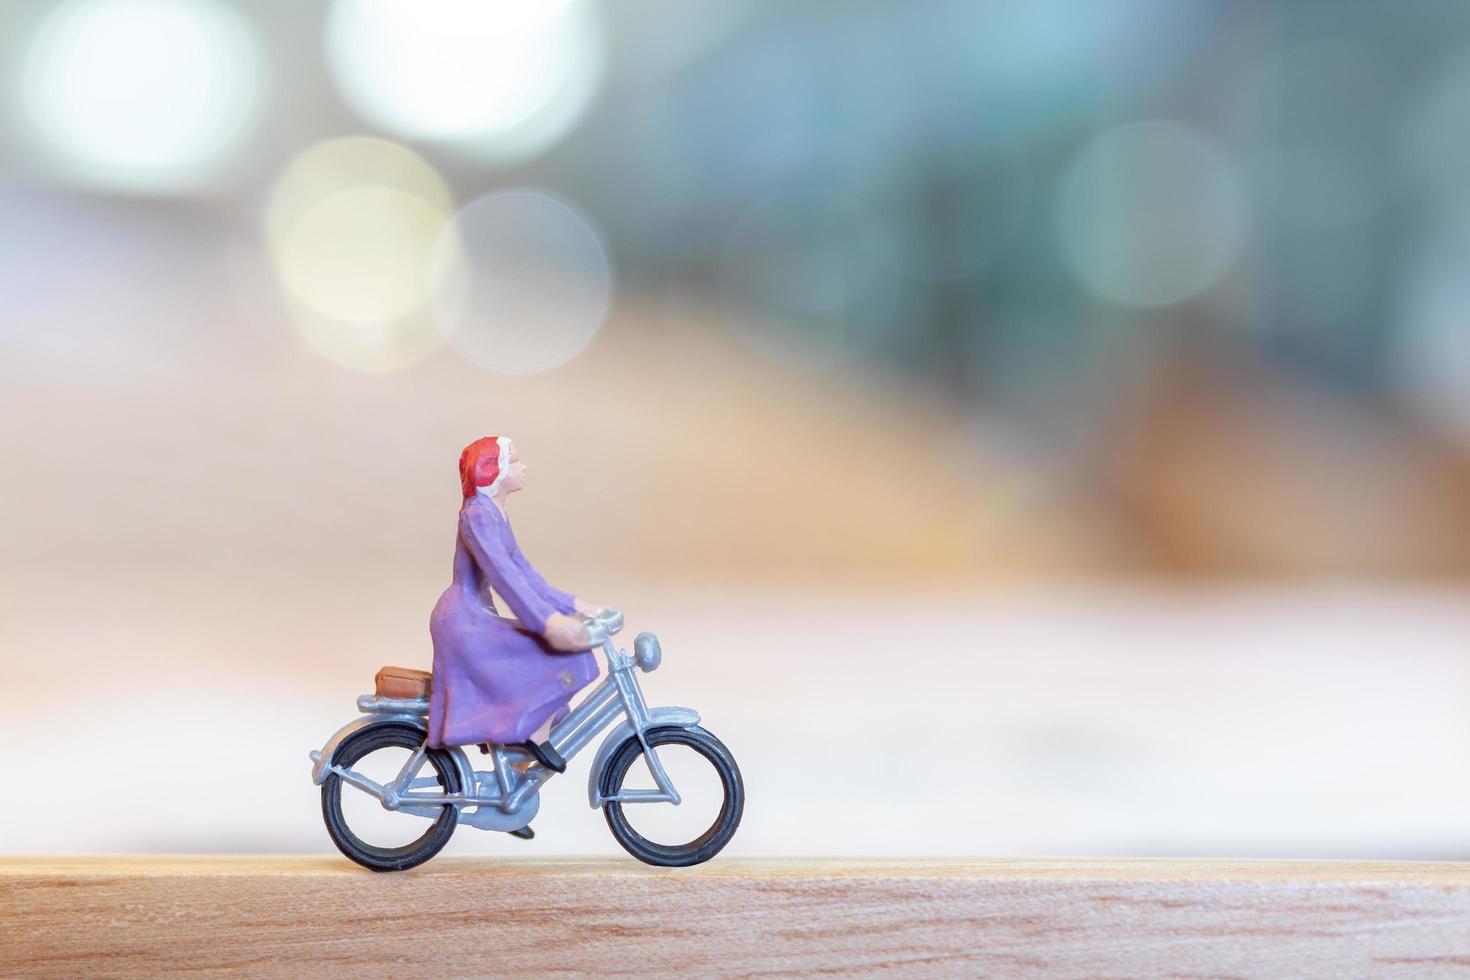 miniatuurpersoon fietsen op een houten brug, zorgconcept foto